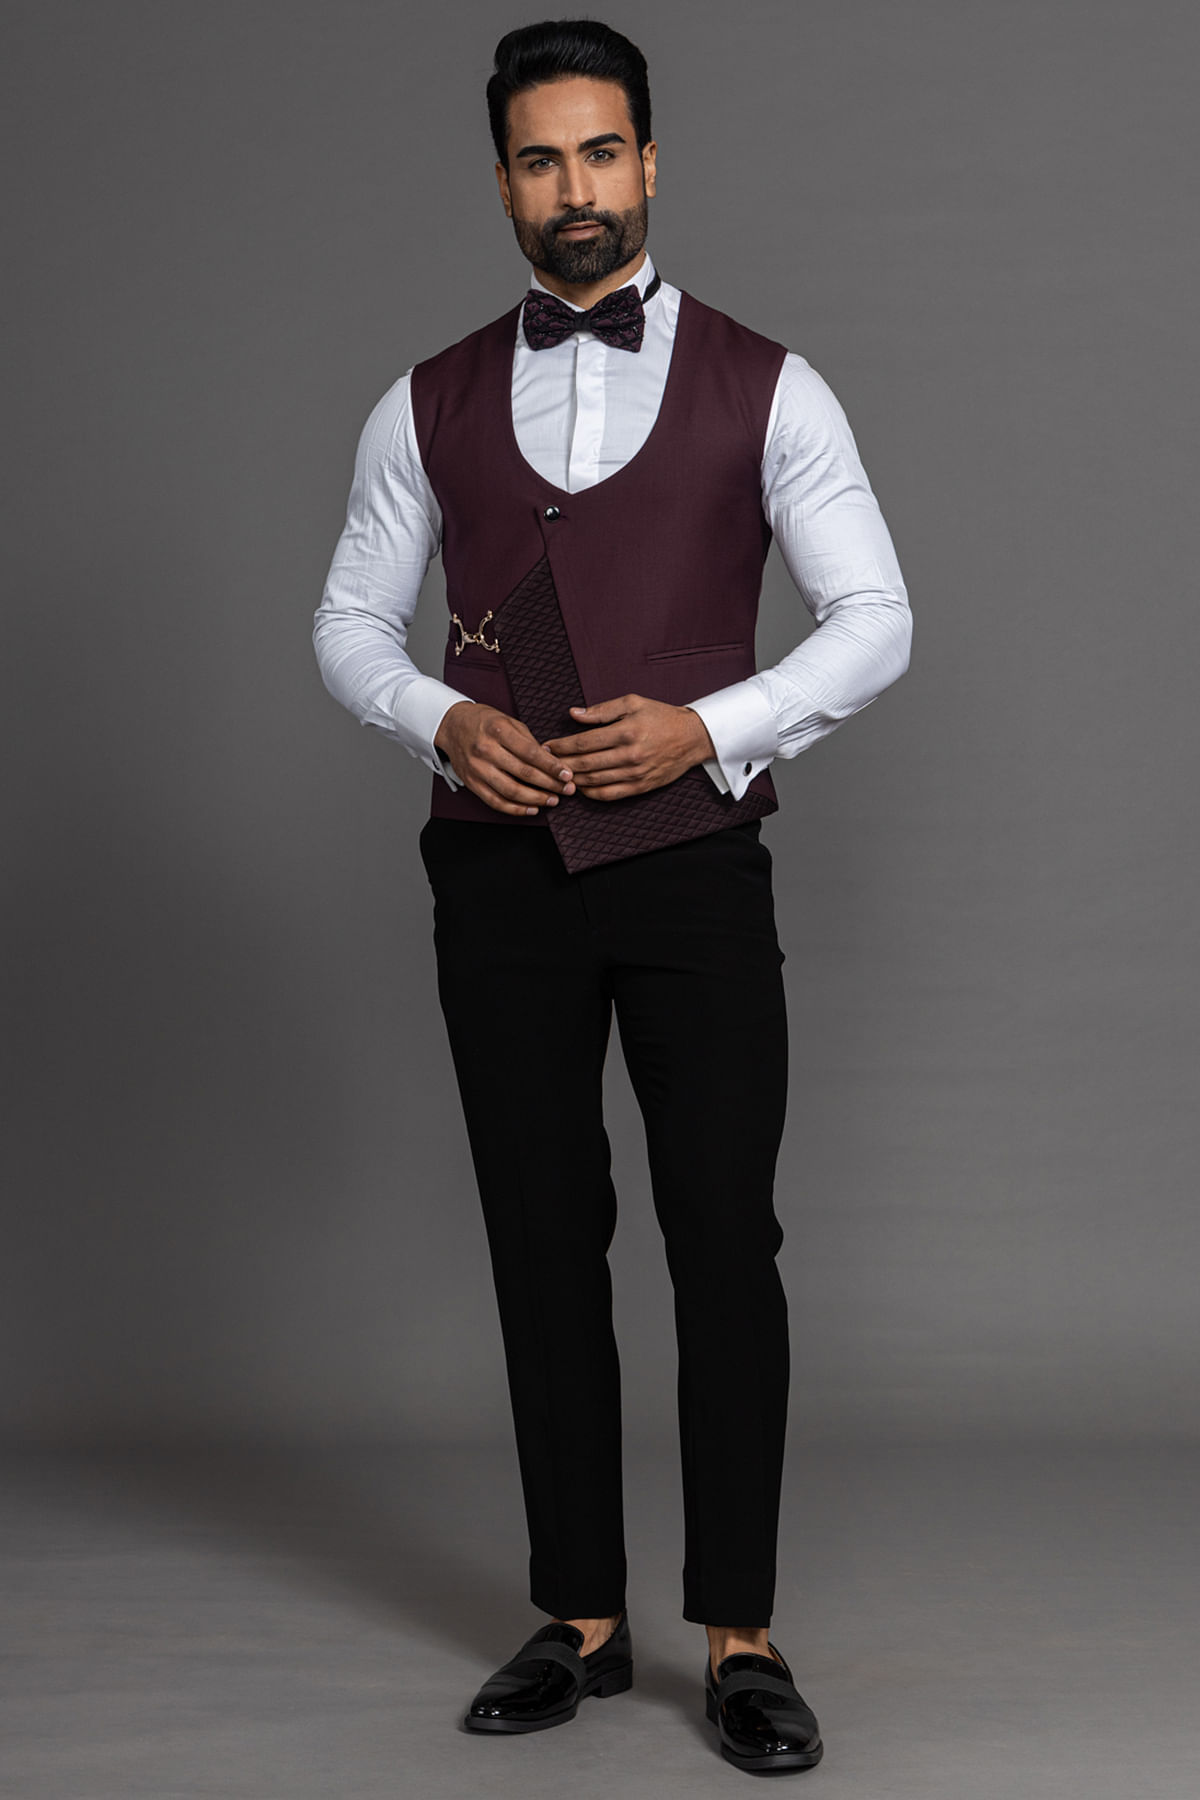 Waistcoats for Men : Buy Online - Happy Gentleman